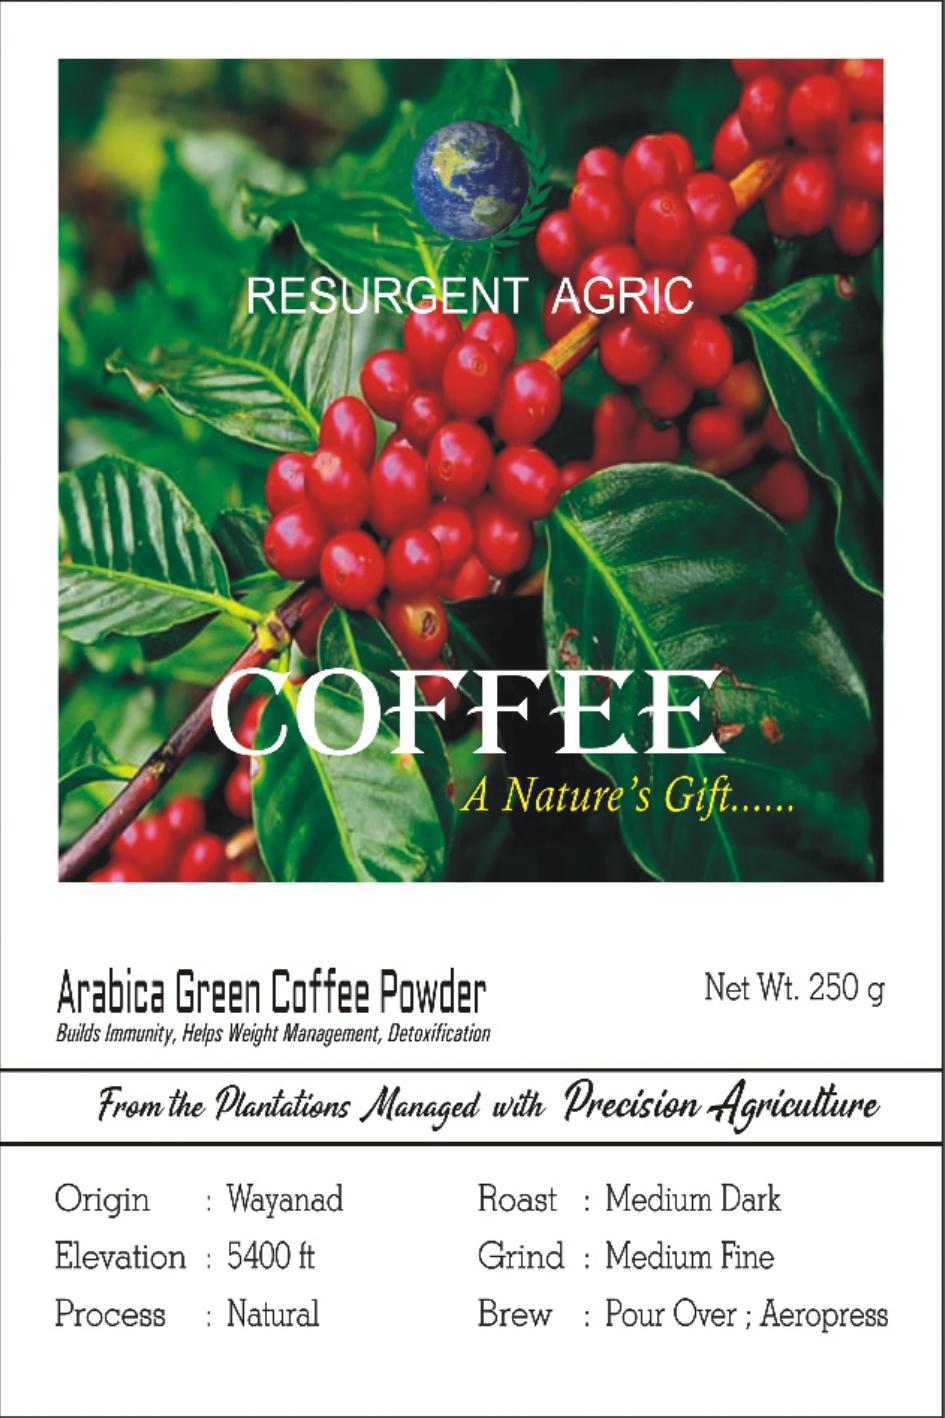 Arabica Green Coffee Powder (Light - Medium Fine)